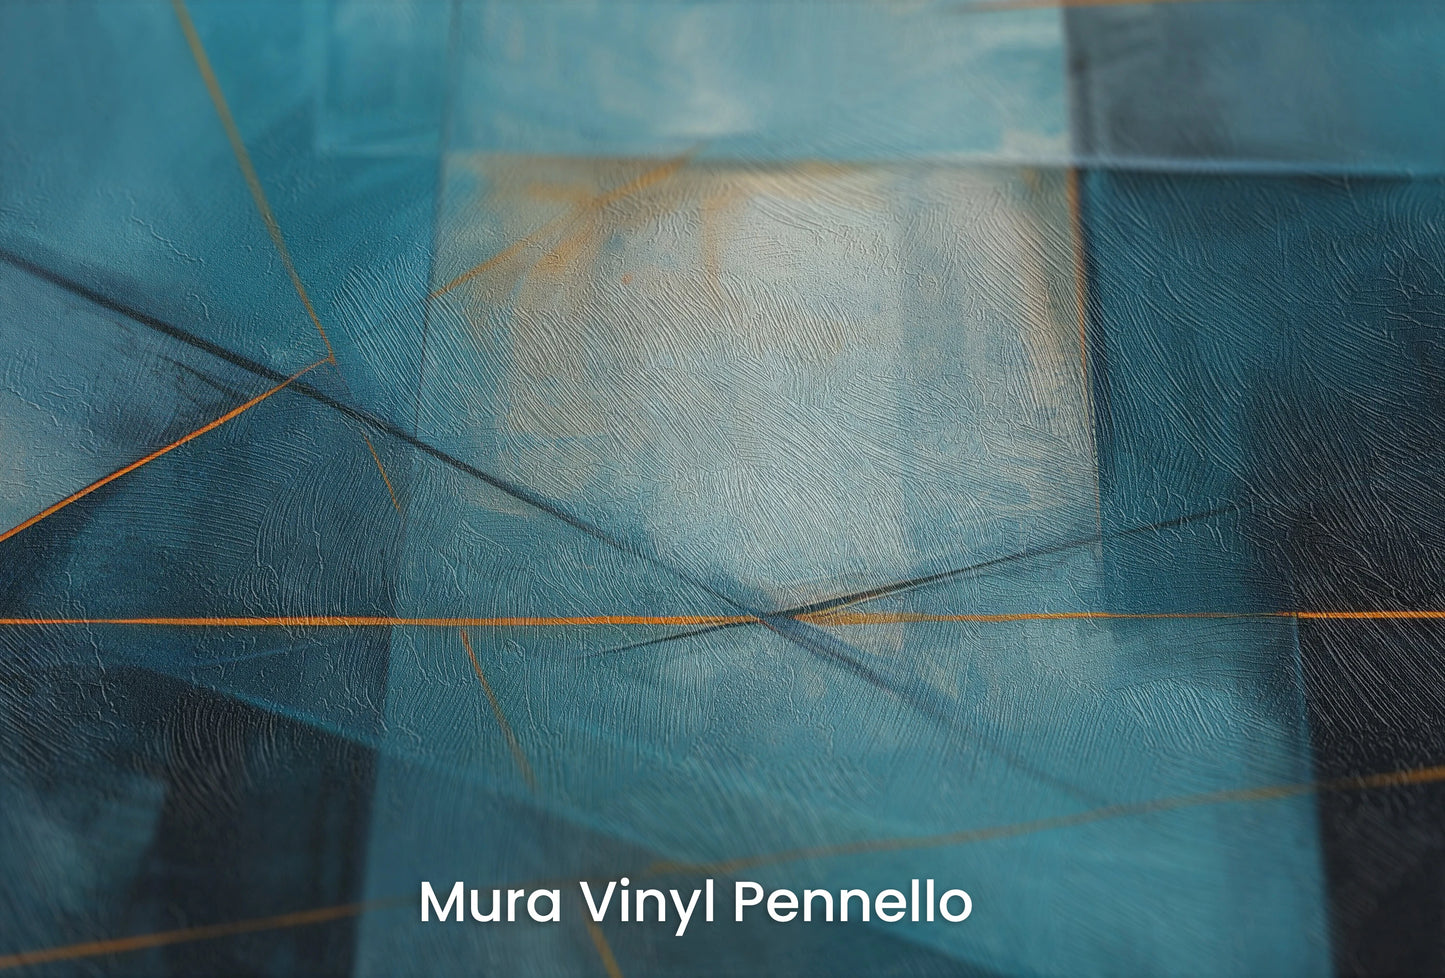 Zbliżenie na artystyczną fototapetę o nazwie Azure Intersection na podłożu Mura Vinyl Pennello - faktura pociągnięć pędzla malarskiego.